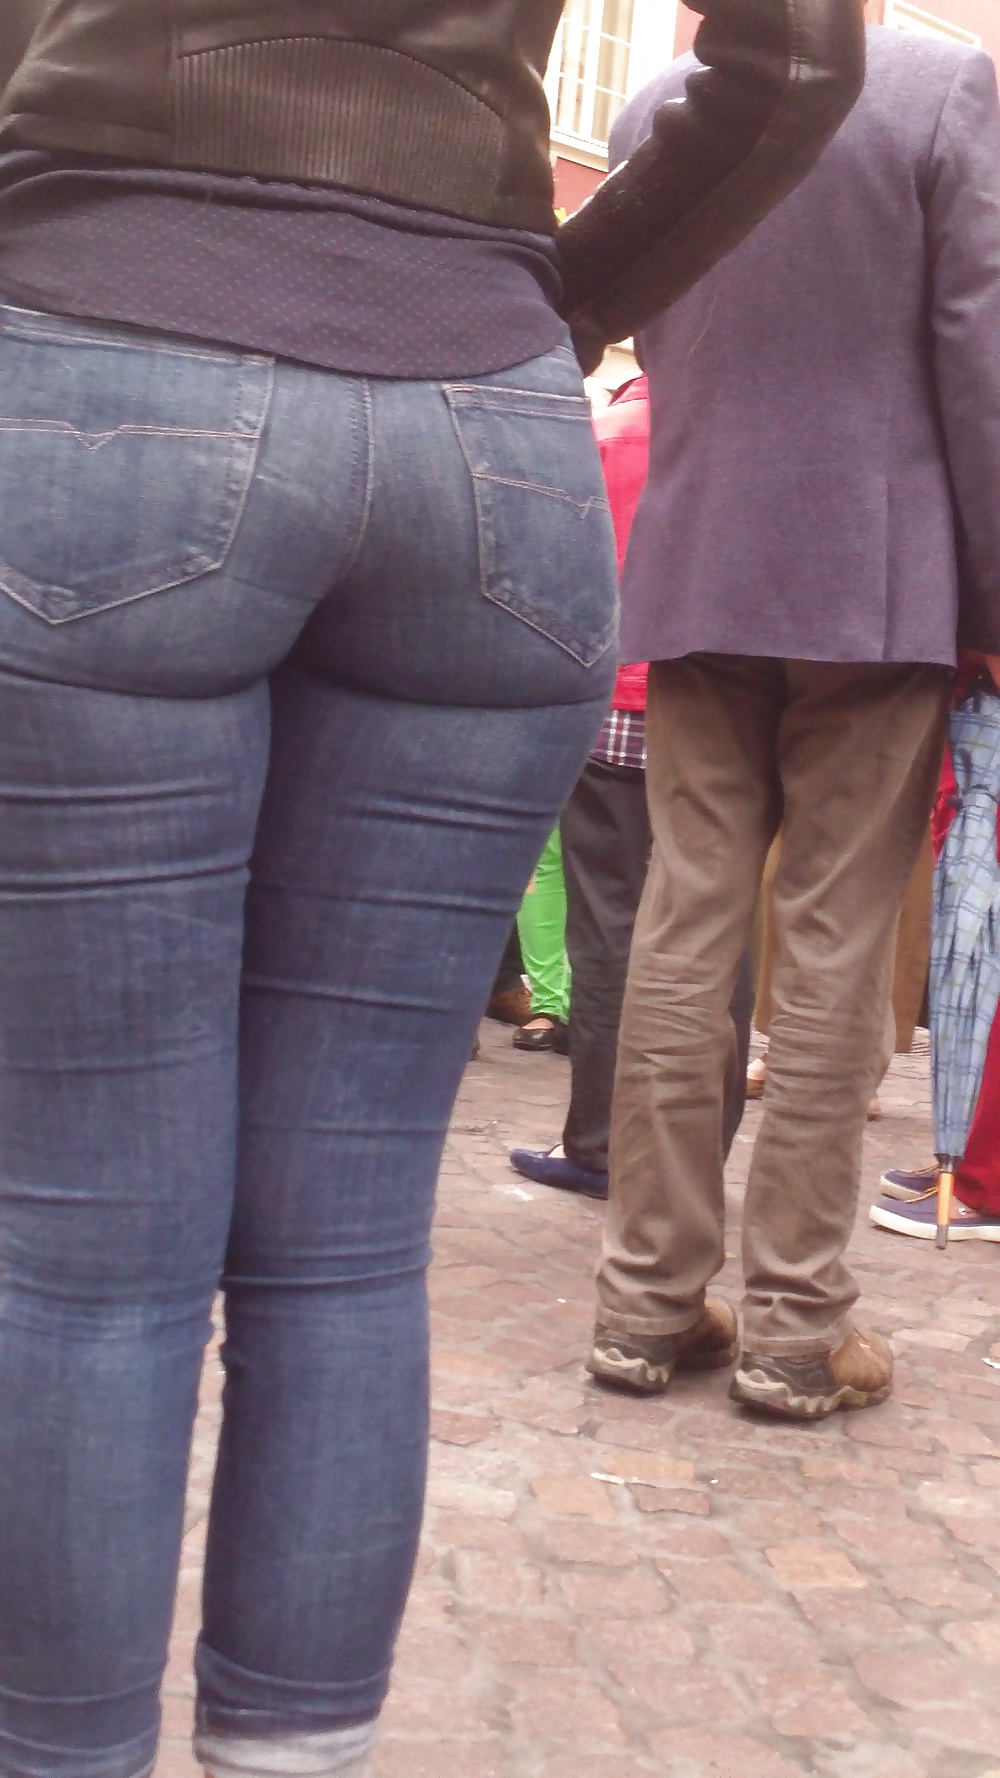 Popular teen girls ass & butt in jeans Part 6 #32010426